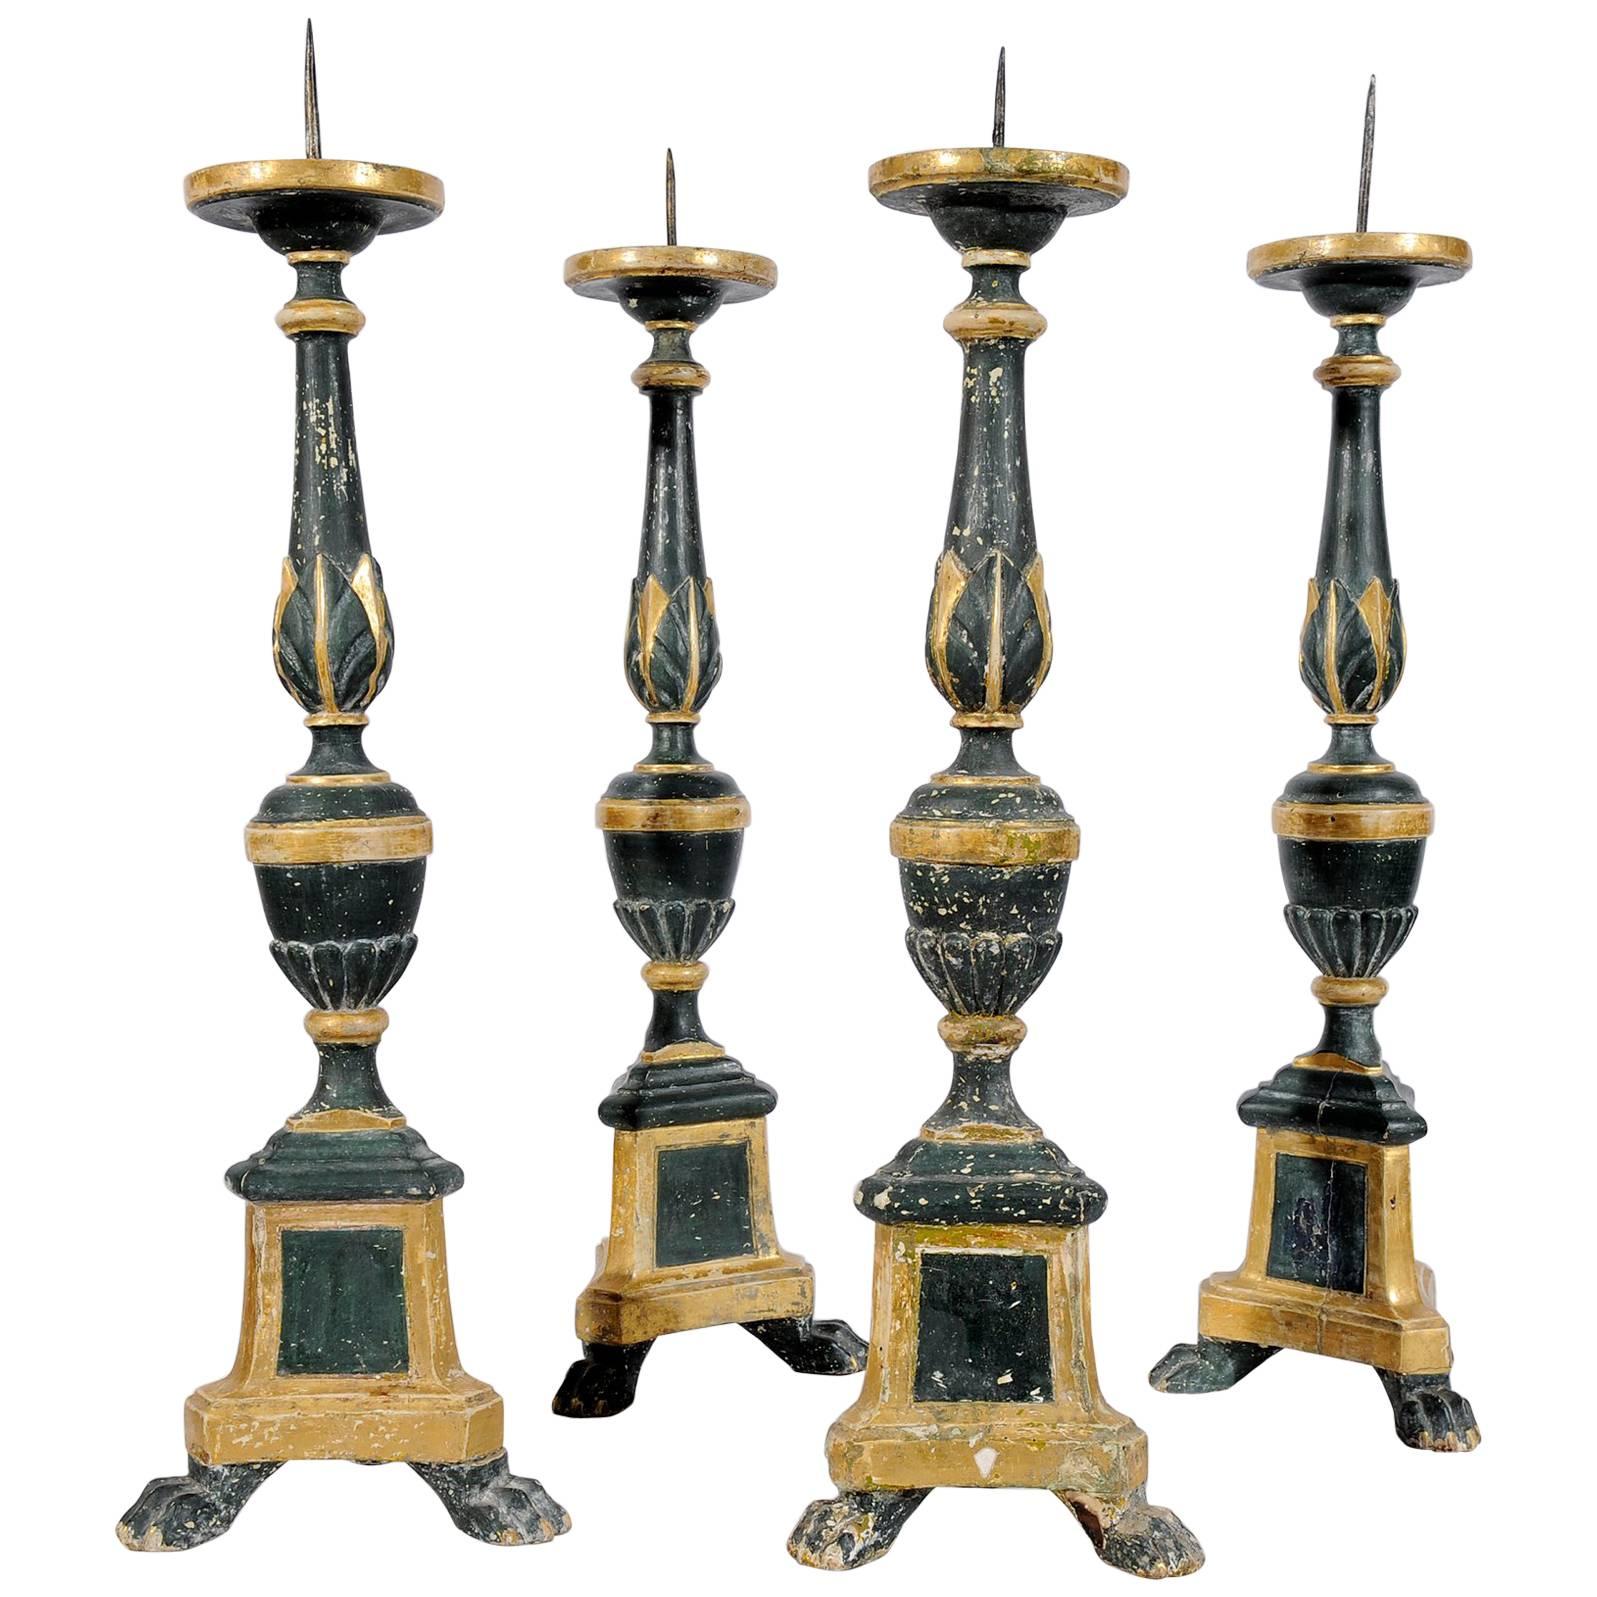 Tall Ancient Italian Green Wooden Candlesticks